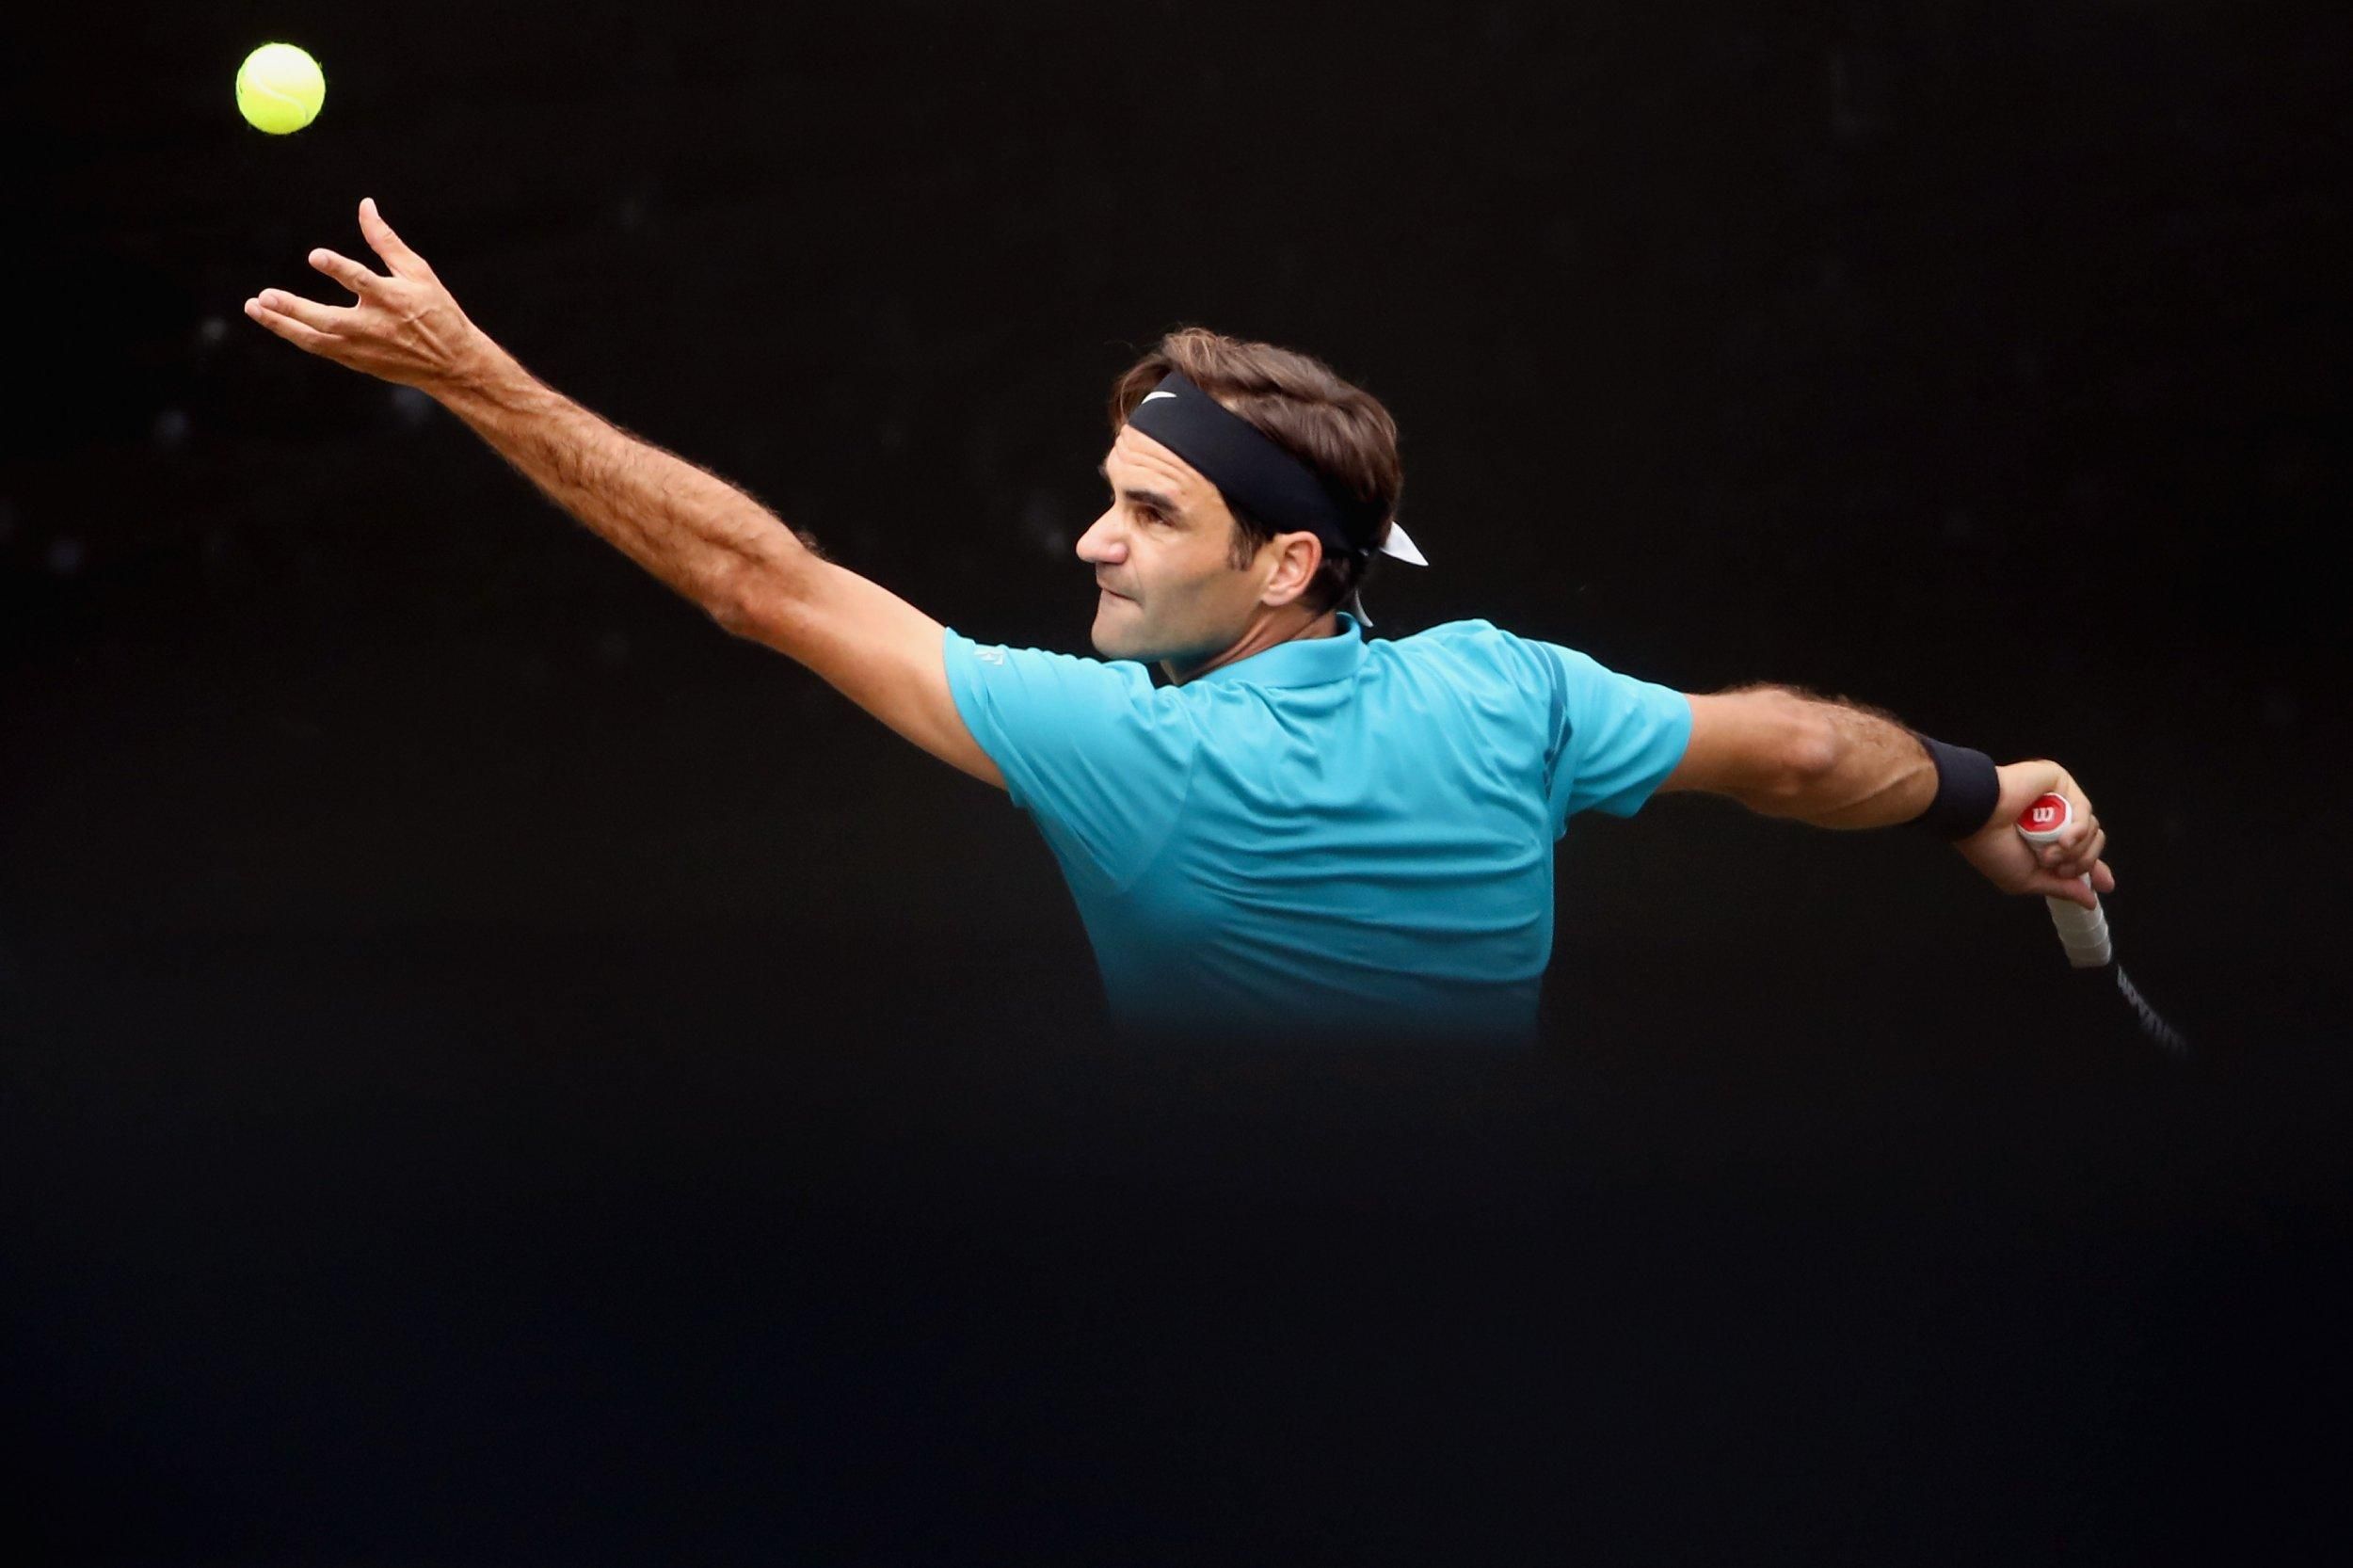 Роджер Федерер установил очередной удивительный рекорд - 2 ноября 2020 - Спорт 24